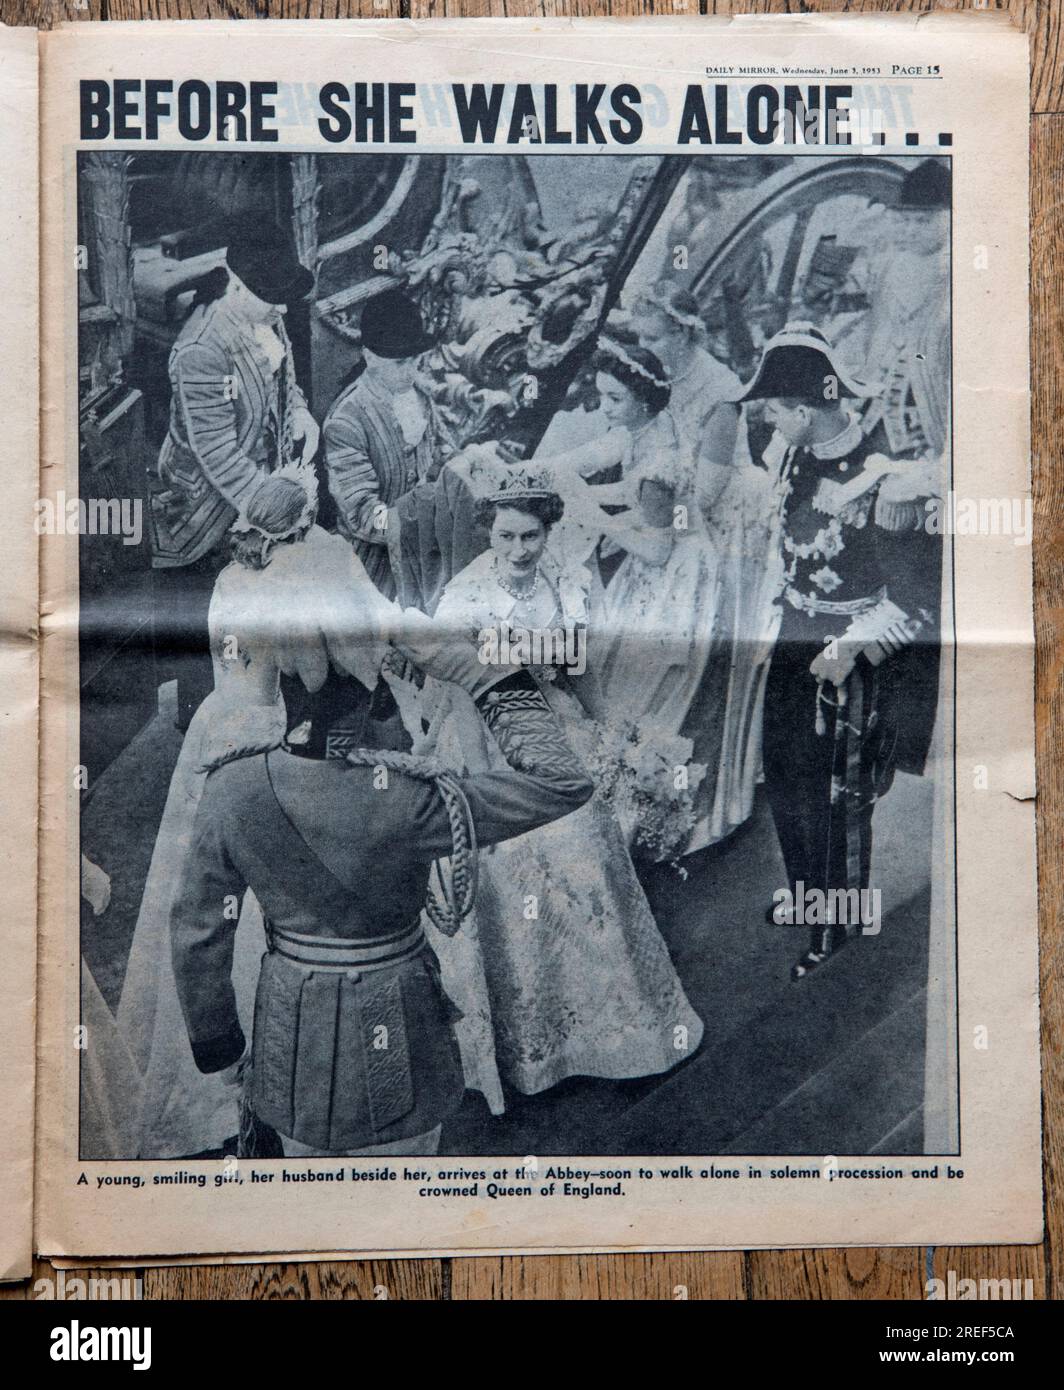 Speciale incoronazione Regina Elisabetta II, 2 giugno 1953. Il quotidiano Daily Mirror. Notizie in prima pagina. Del 3 giugno 1953. Una vecchia copia usata di un giornale britannico tabloid. 1950s Gran Bretagna Regno Unito. Foto Stock